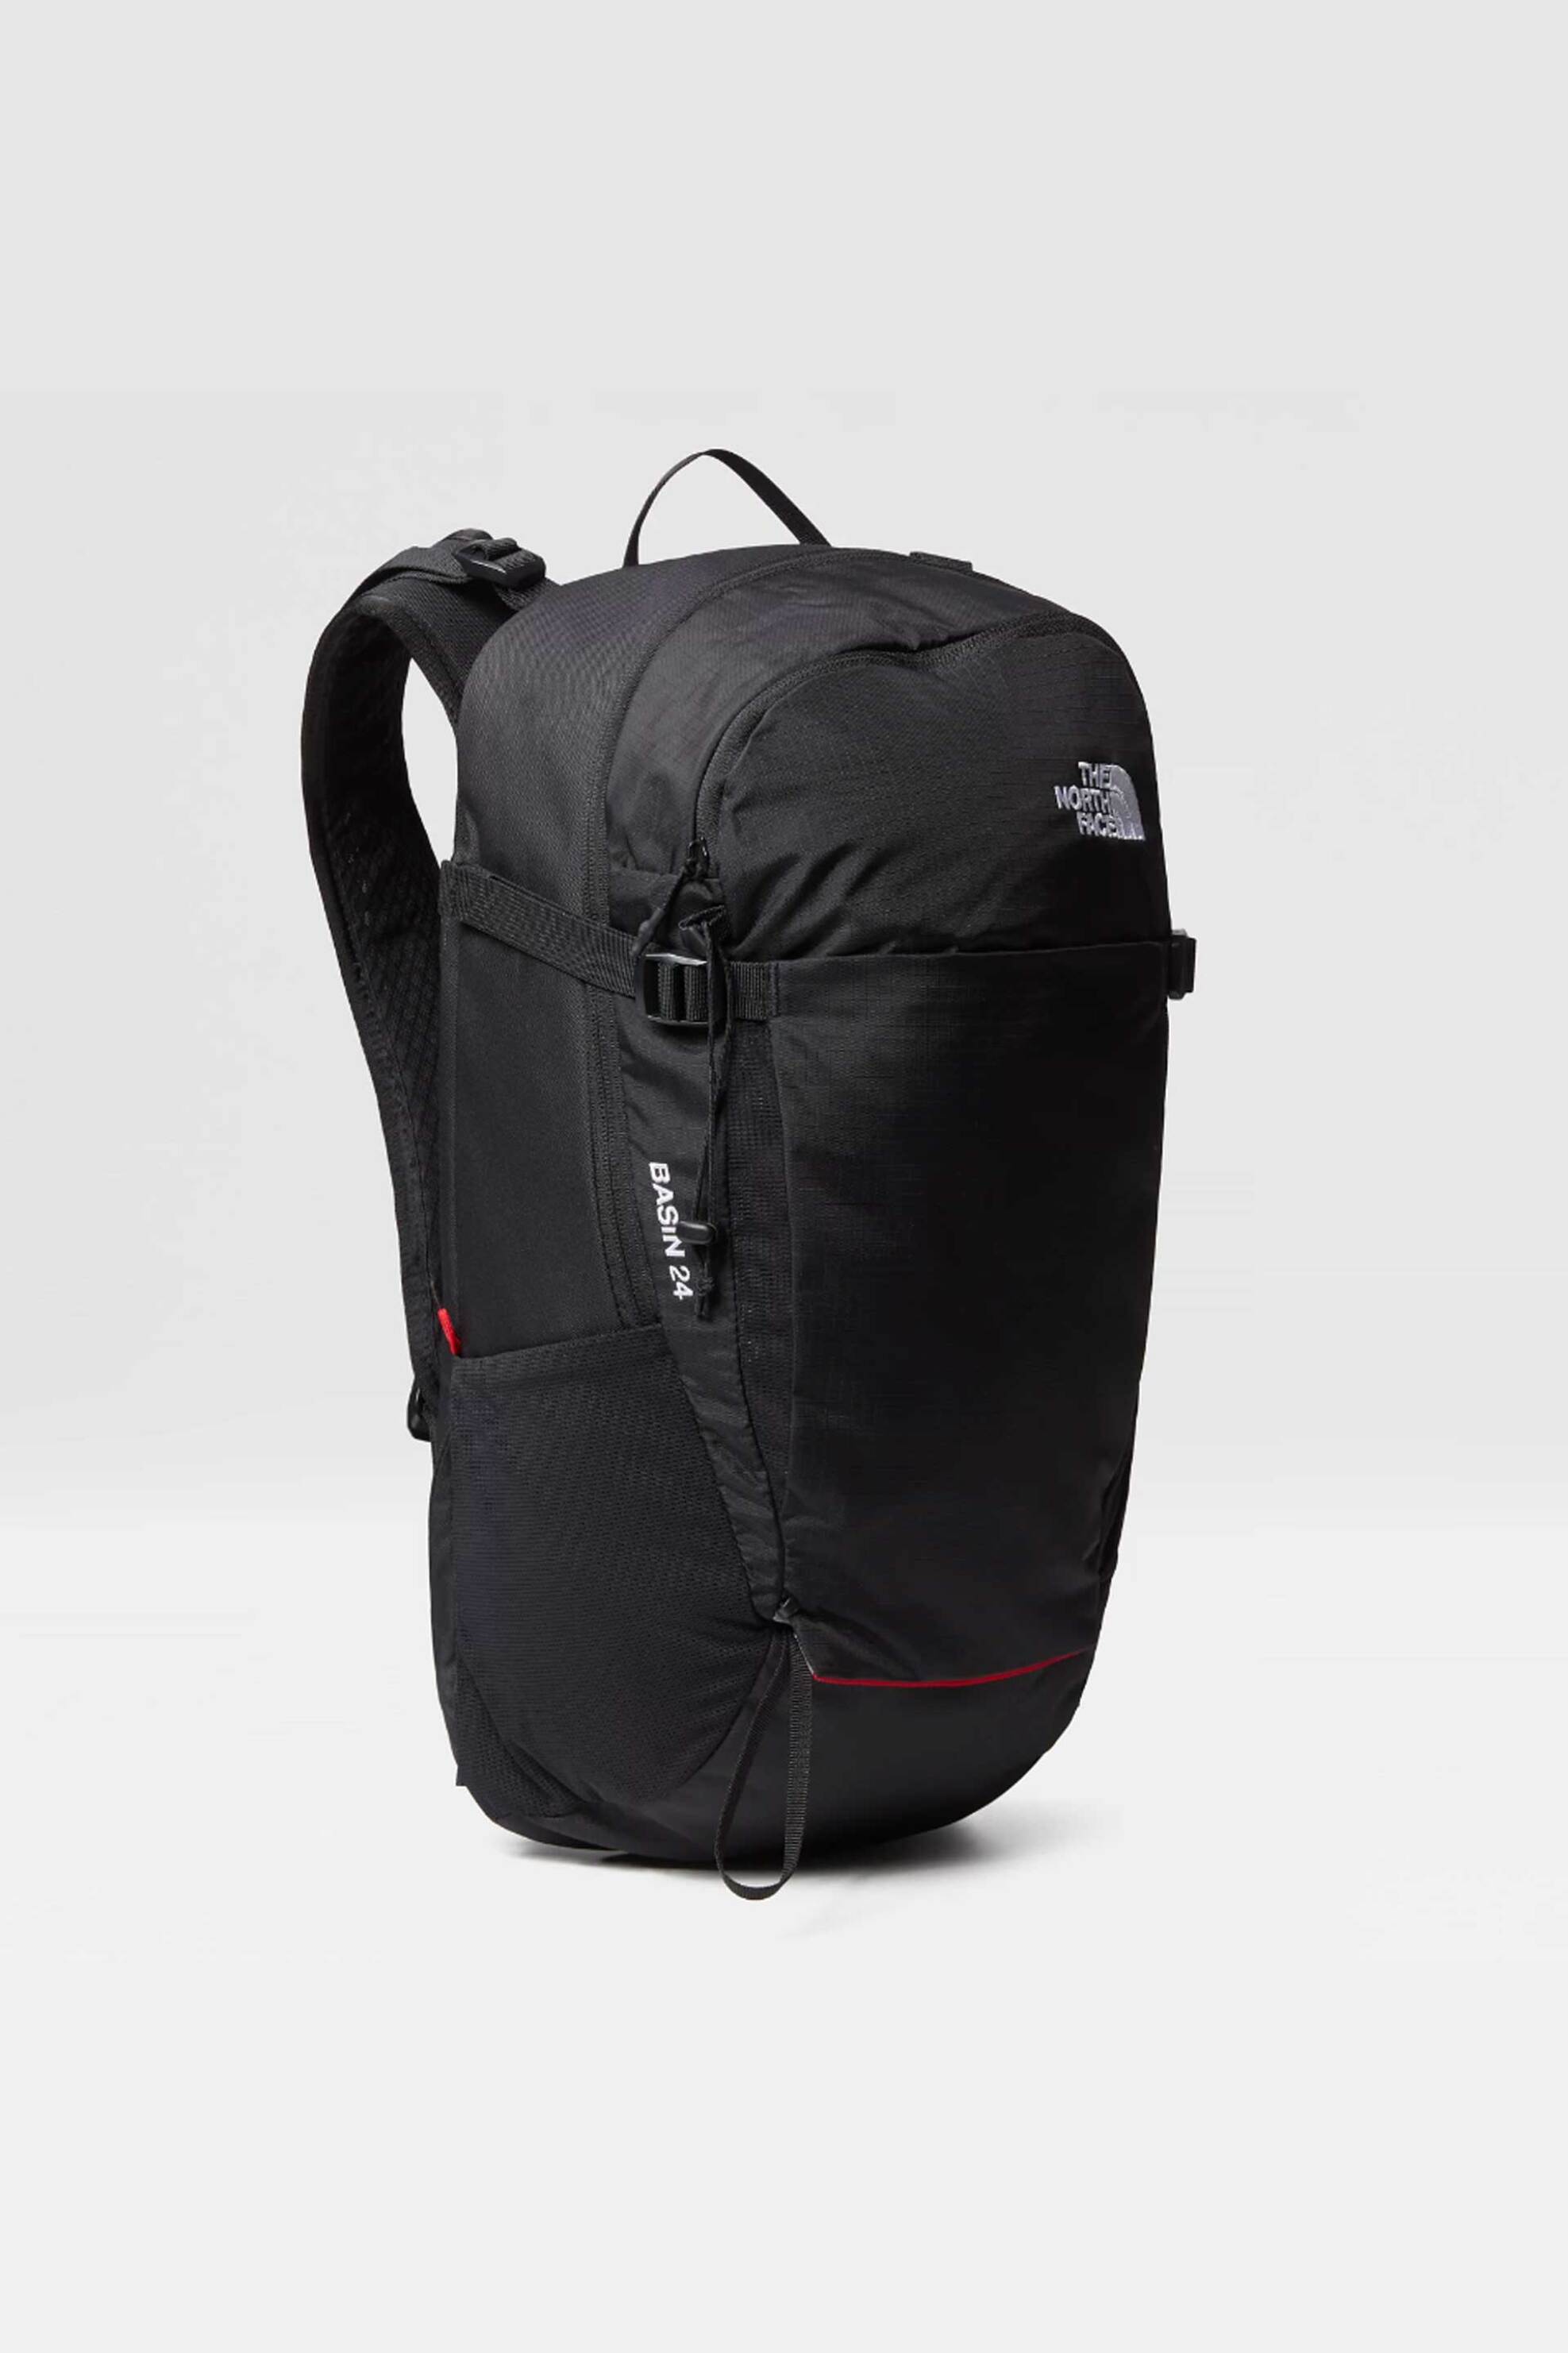 Ανδρική Μόδα > Ανδρικές Τσάντες > Ανδρικά Σακίδια & Backpacks The North Face unisex backpack μονόχρωμο με κεντημένο contrast λογότυπο "Basin" - NF0A52CYKX71 Μαύρο